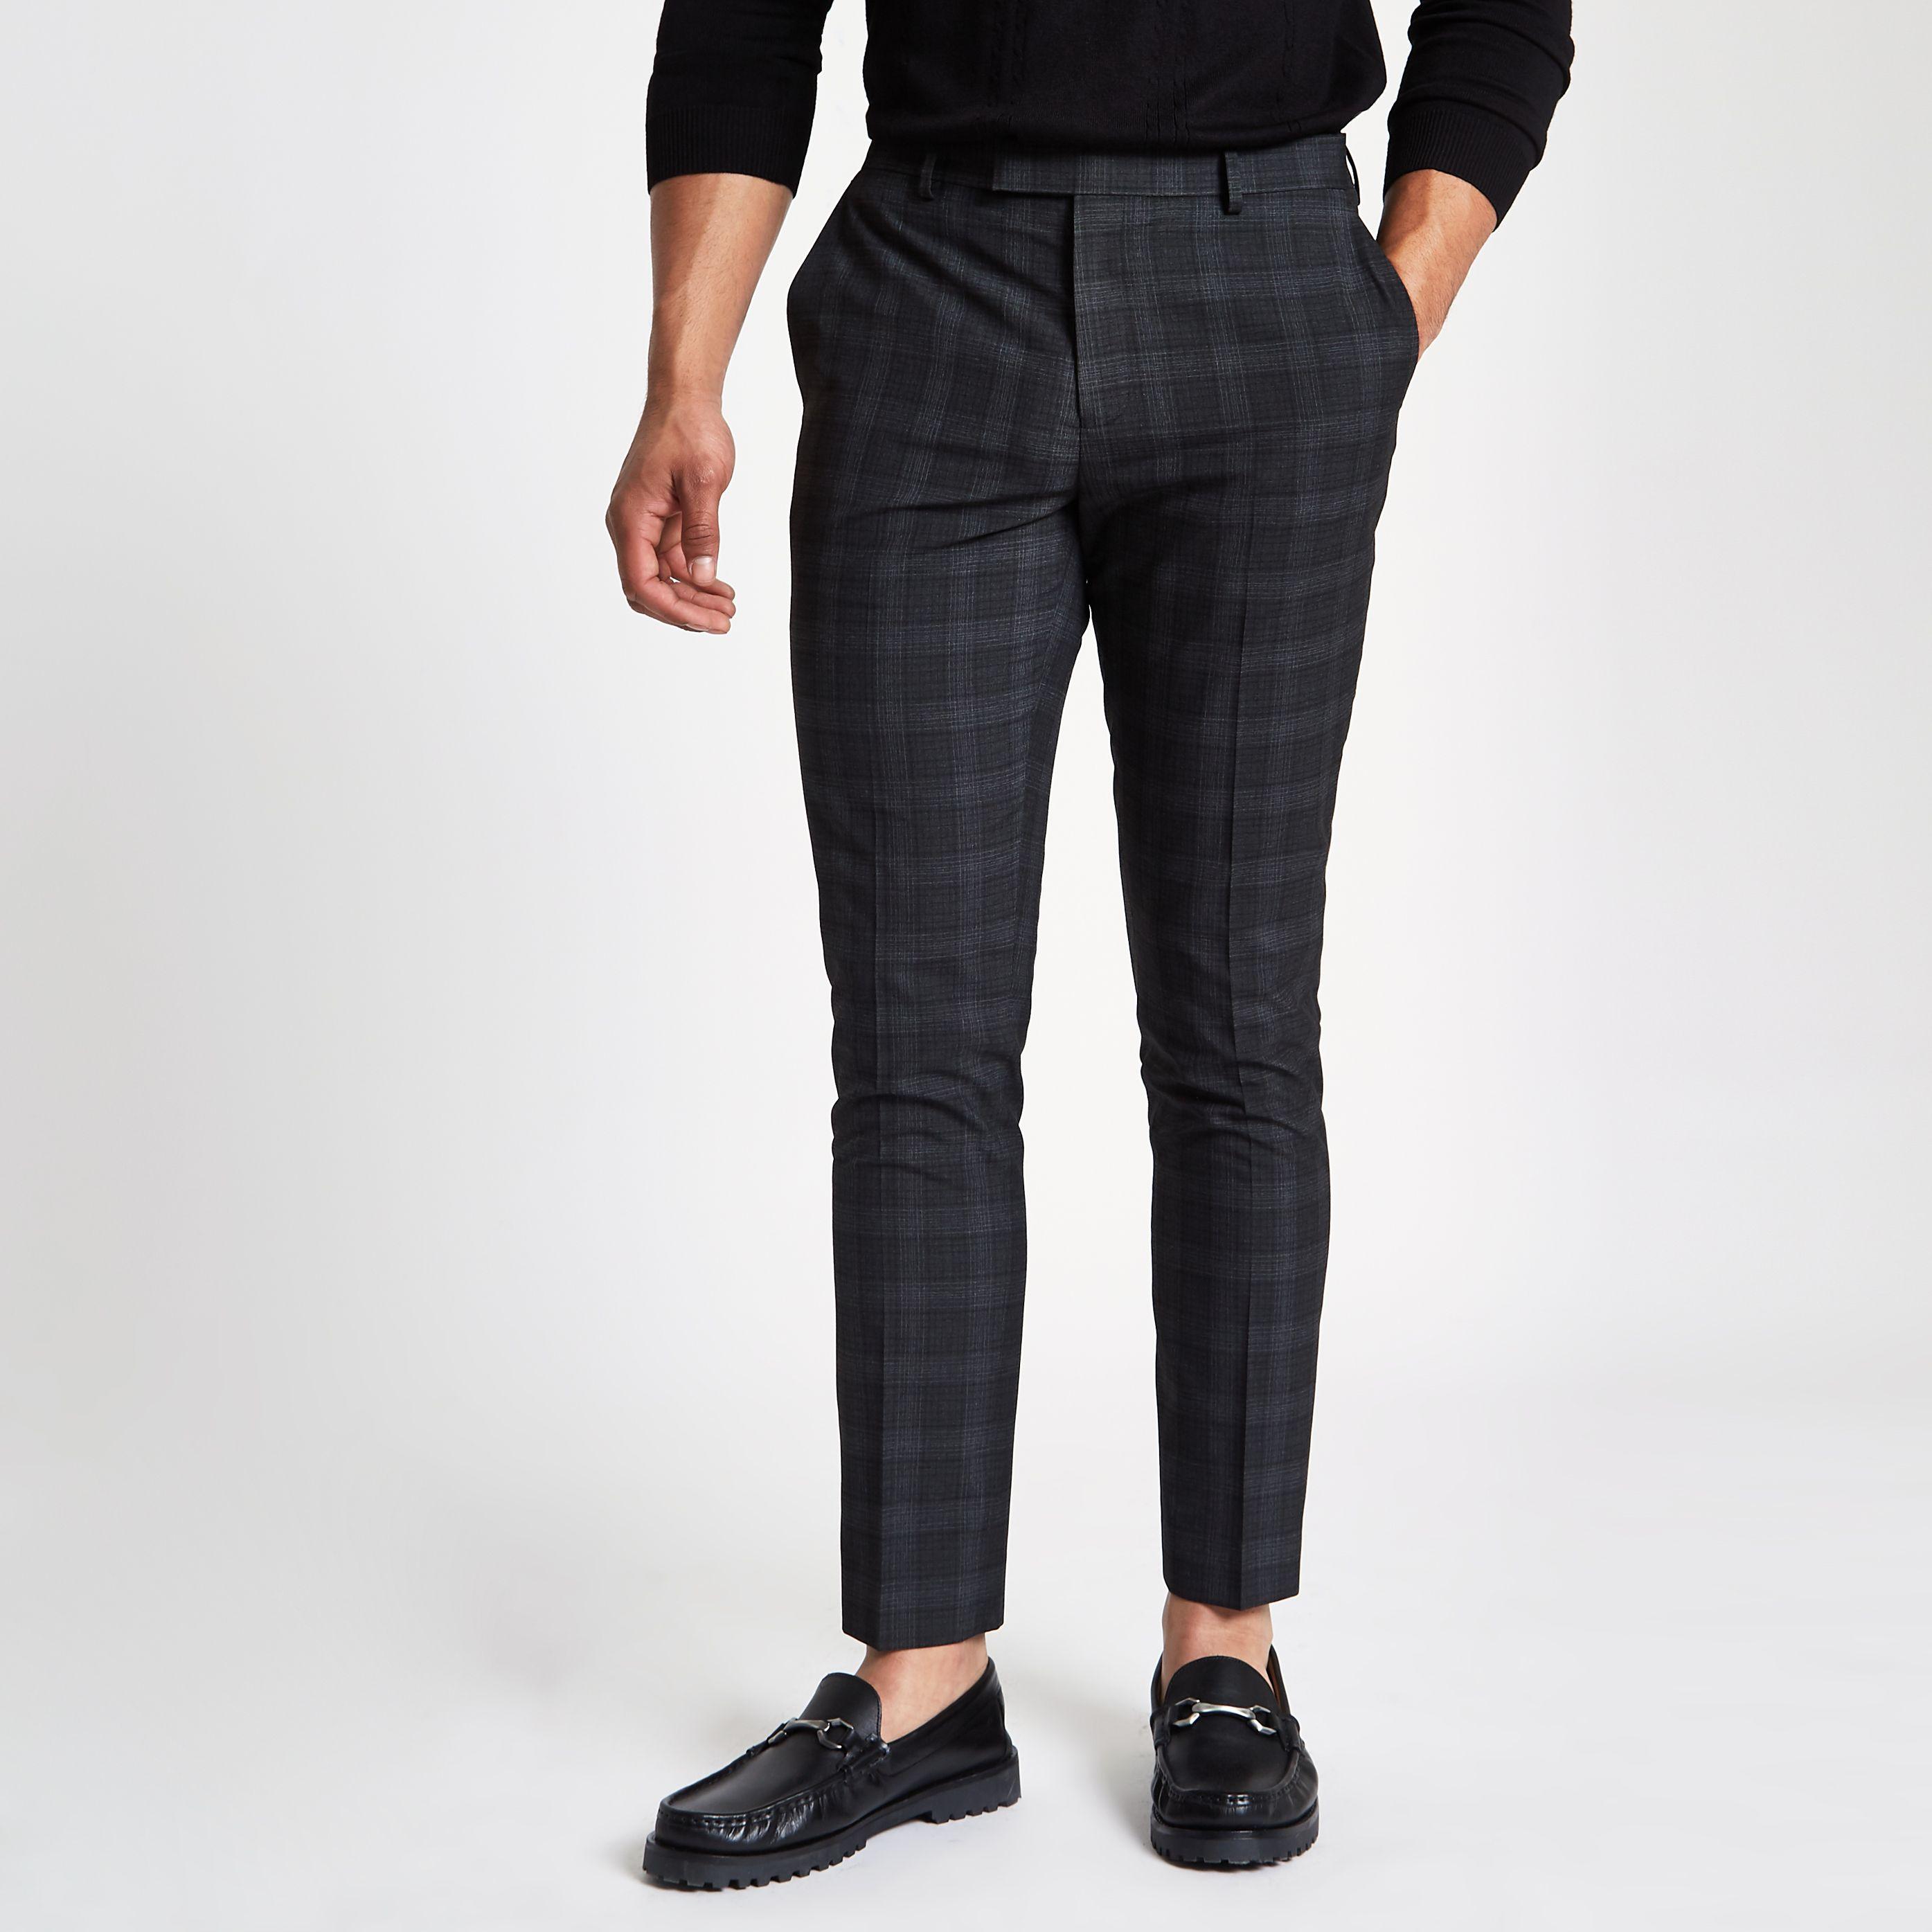 Topman Skinny Smart Pants With Light Gray Check-grey | ModeSens